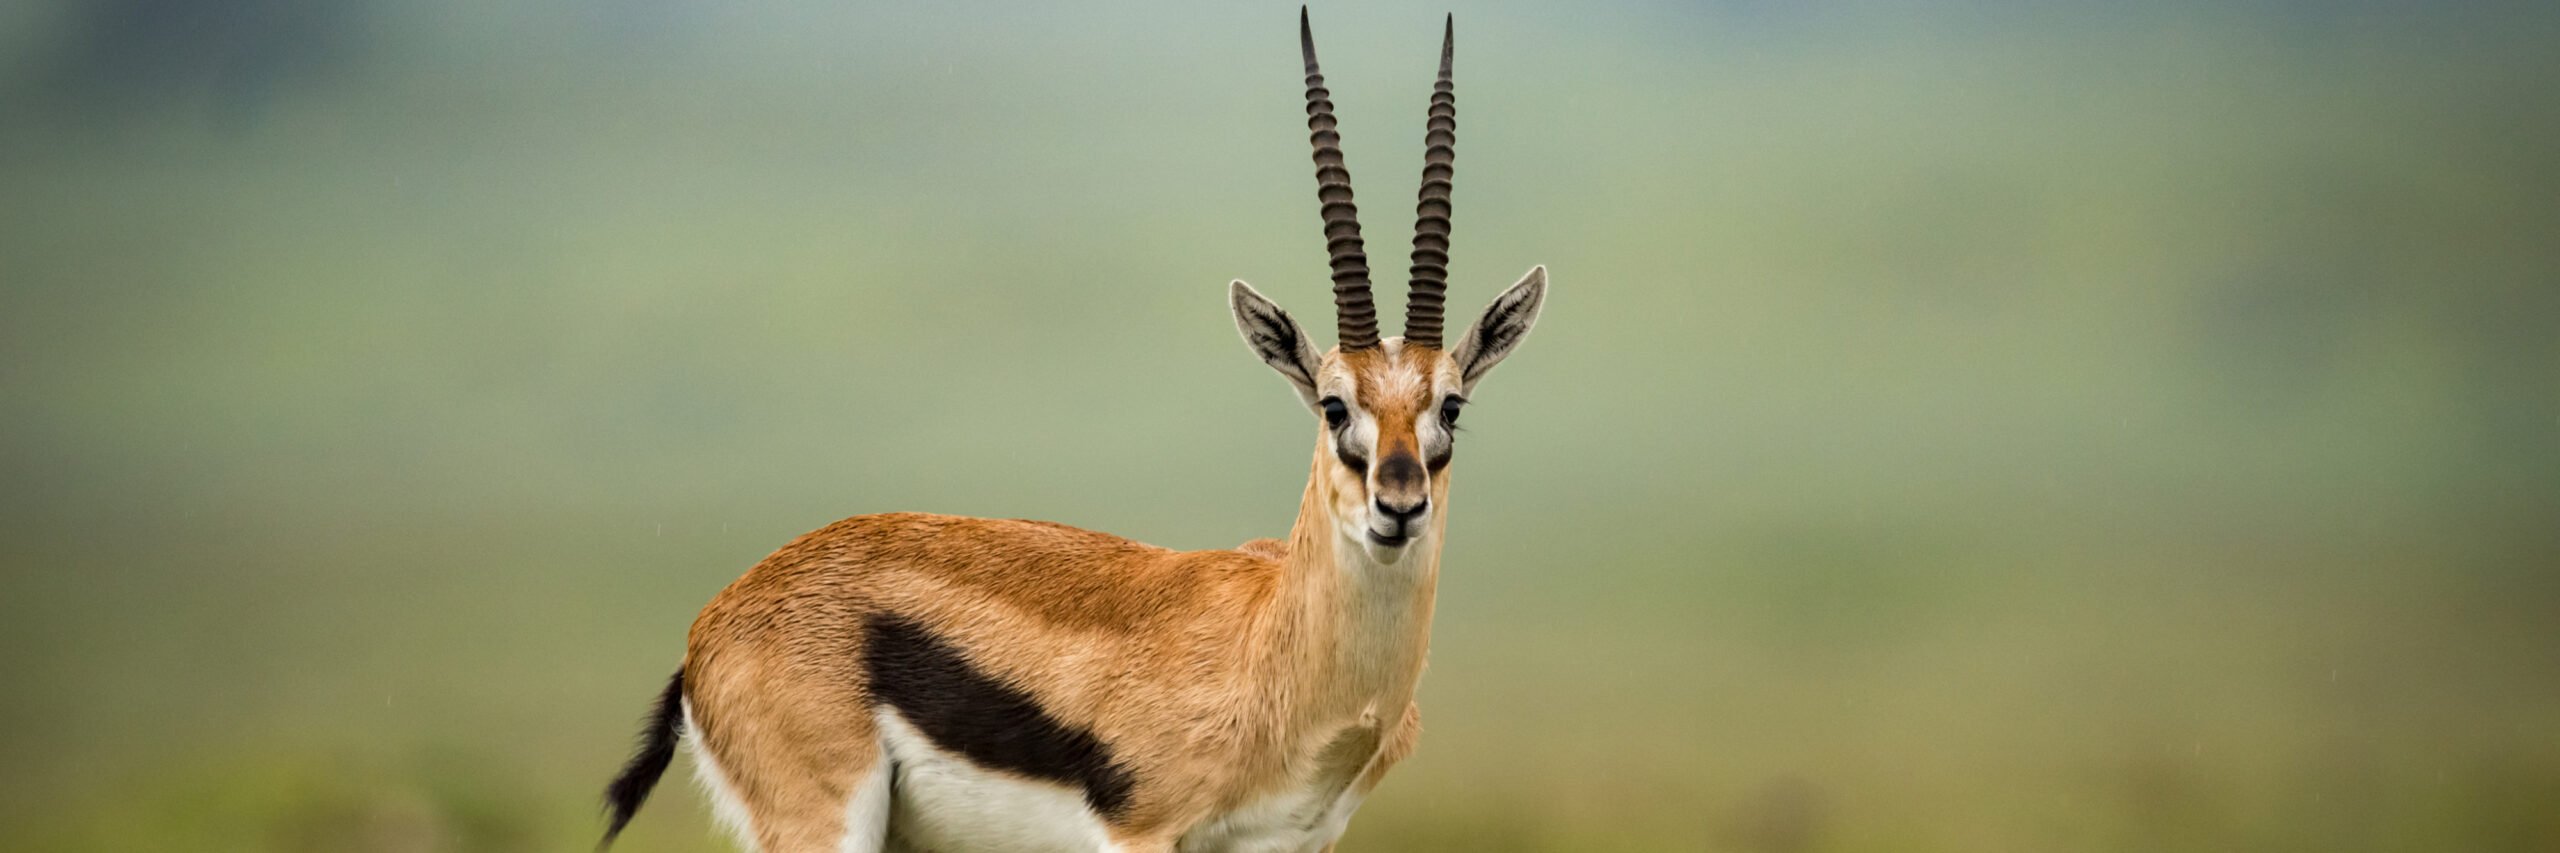 thomson-gazelle